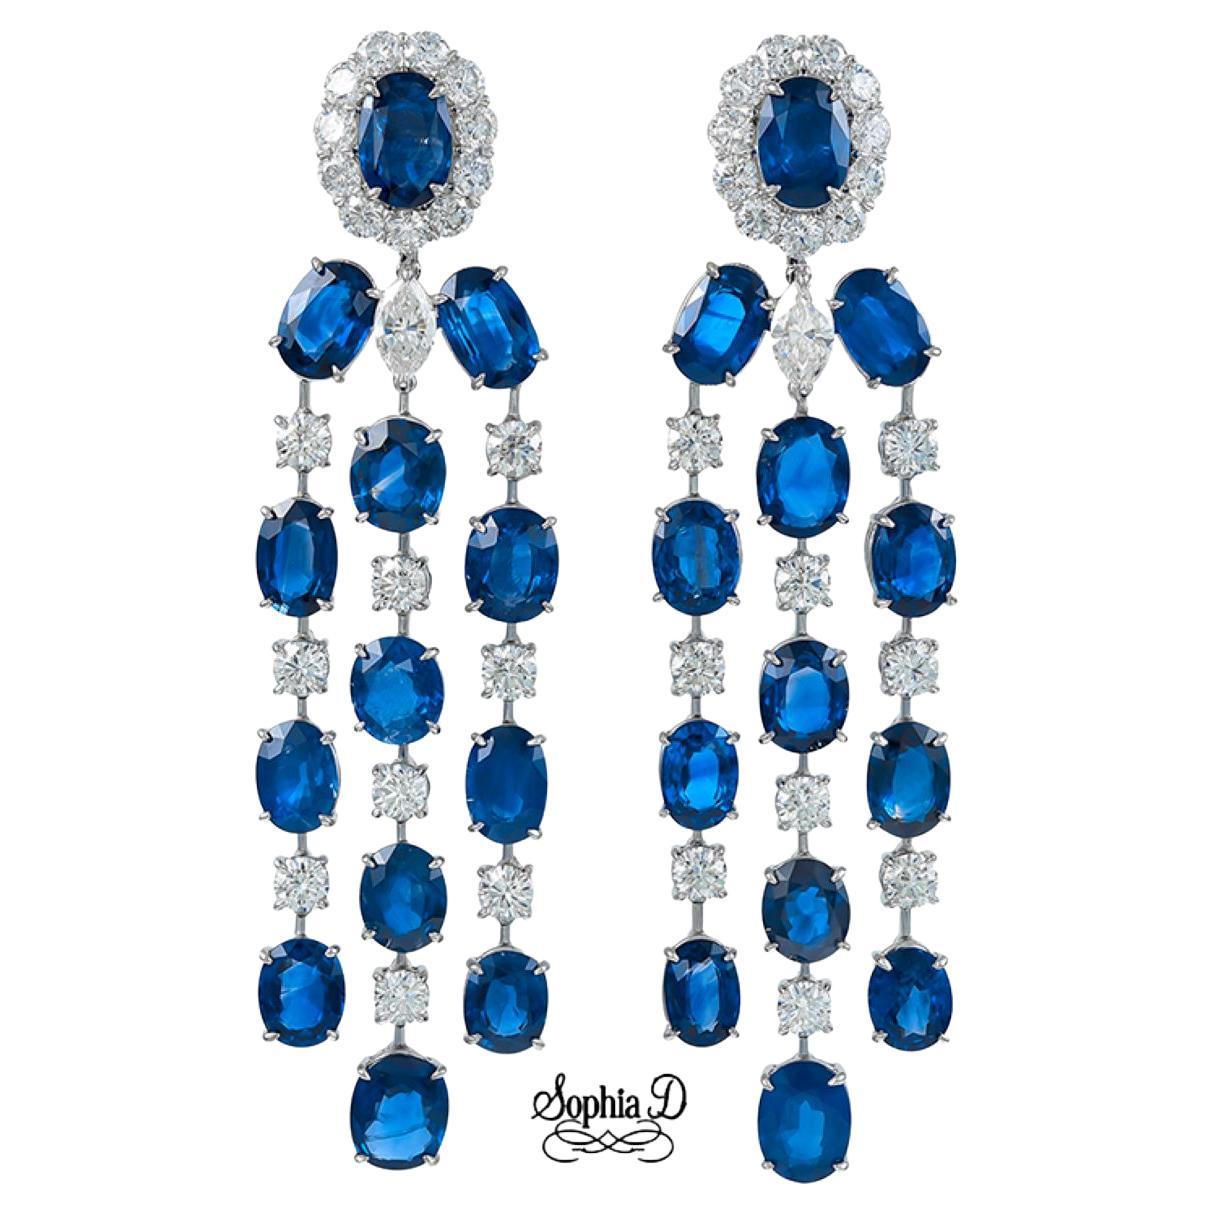 Sophia D. Boucles d'oreilles en platine avec saphir bleu et diamants